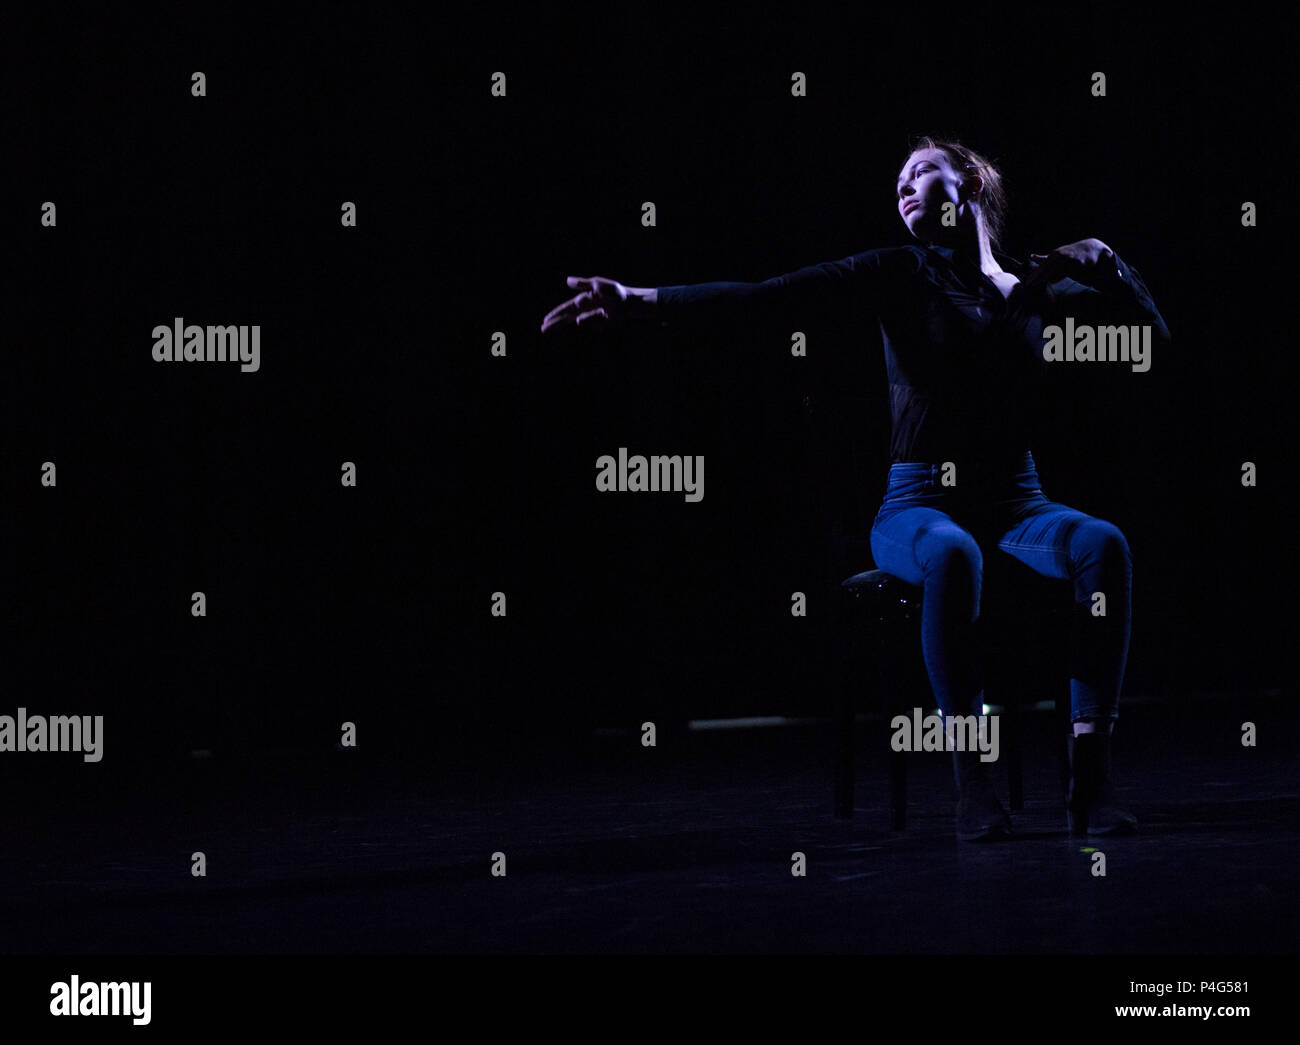 A Dresda, Deutschland. Xx Giugno, 2018. 19.06.2018, Dresda, Sassonia. Sophie Hauenherm, danza studente presso l'Università Palucca di danza, balli sul palco durante una prova per la sua performance. Dopo una grave malattia, il 18-anno-vecchio è dipendente su una sedia a rotelle. (A DPA: 'Reifeprufung: quando la danza diventa l'elisir di lunga vita" dal 21.06.2018) Credito: Monika Skolimowska/dpa-immagine centrale/dpa | in tutto il mondo di utilizzo/dpa/Alamy Live News Foto Stock